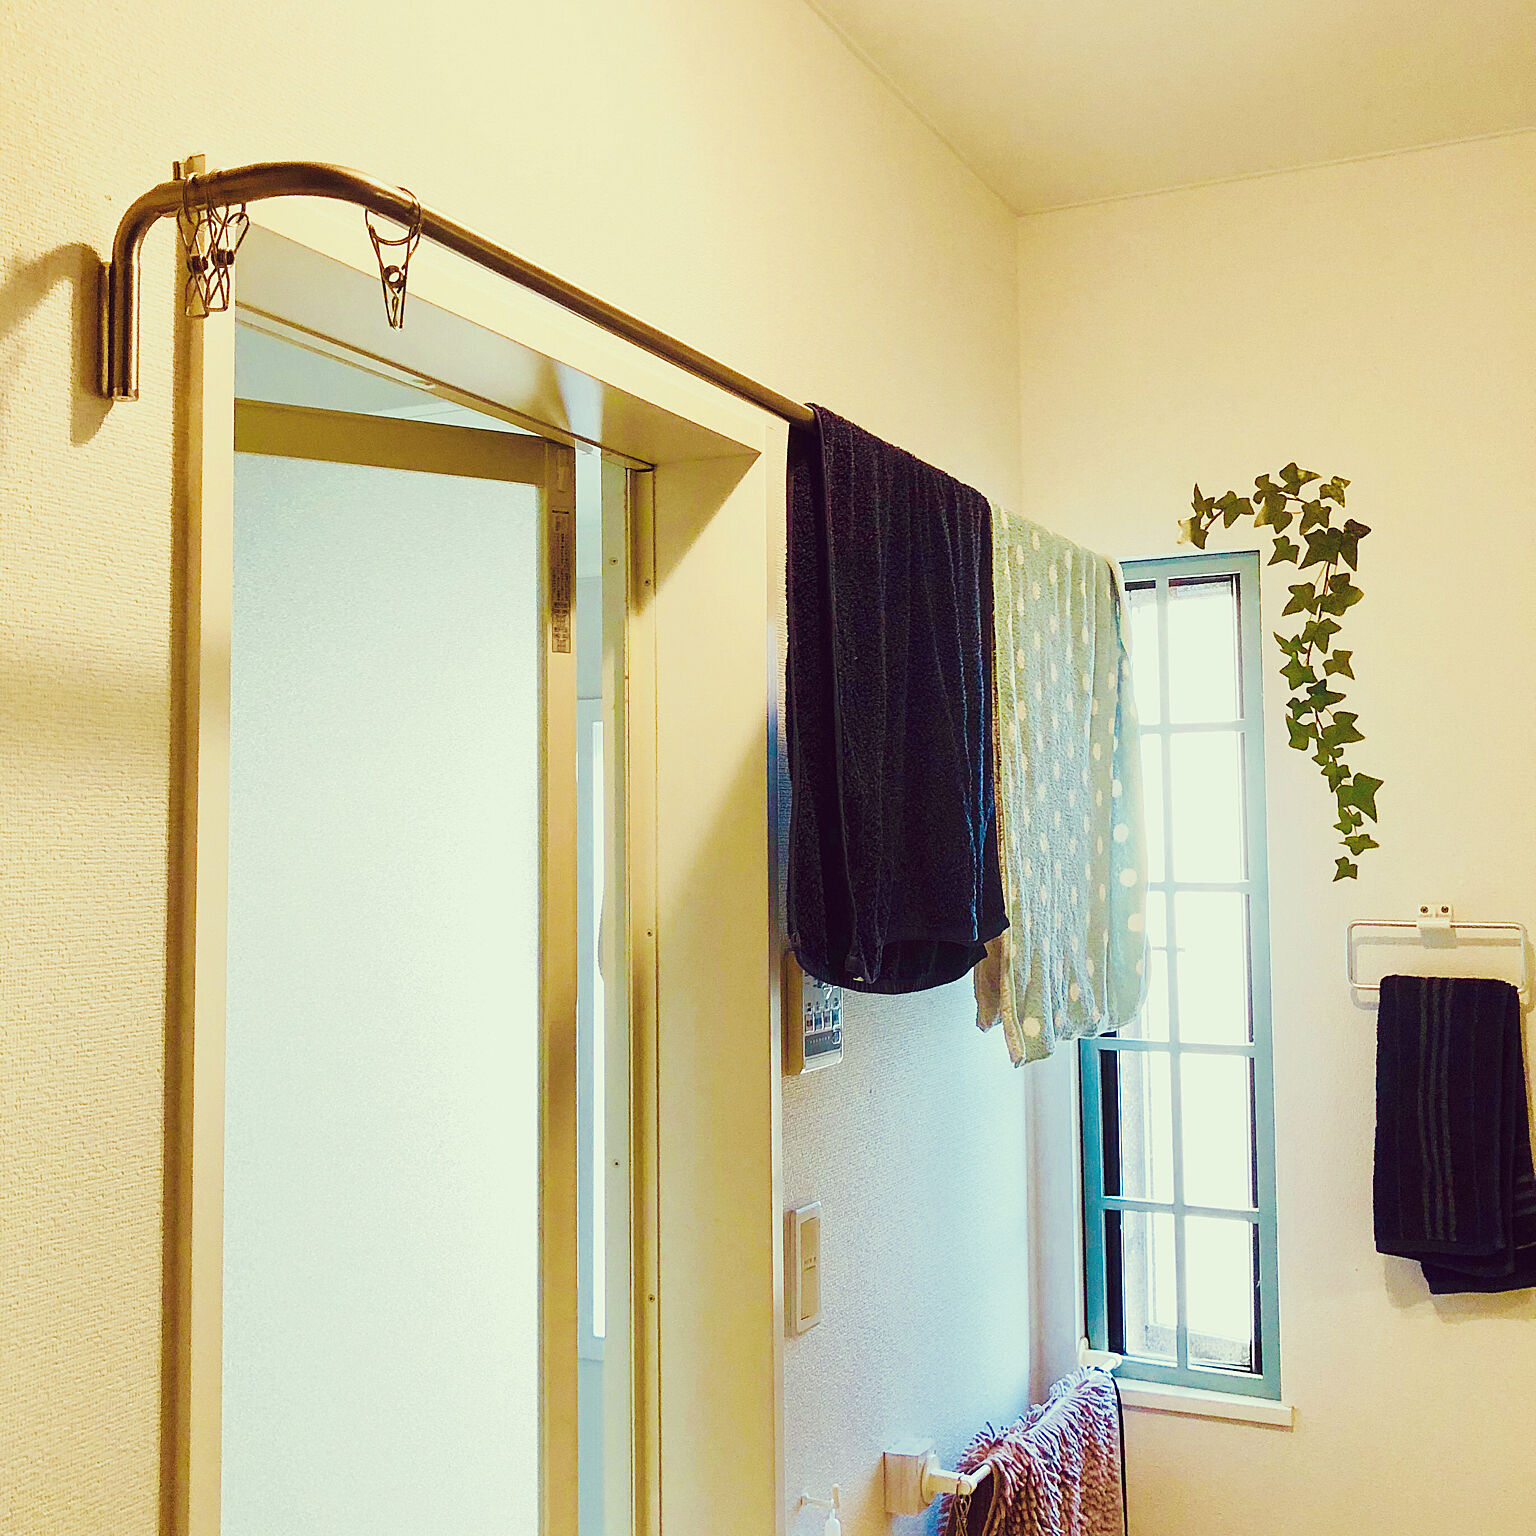 どうやって掛けてる バスタオルの便利な干し方アイディア Roomclip Mag 暮らしとインテリアのwebマガジン